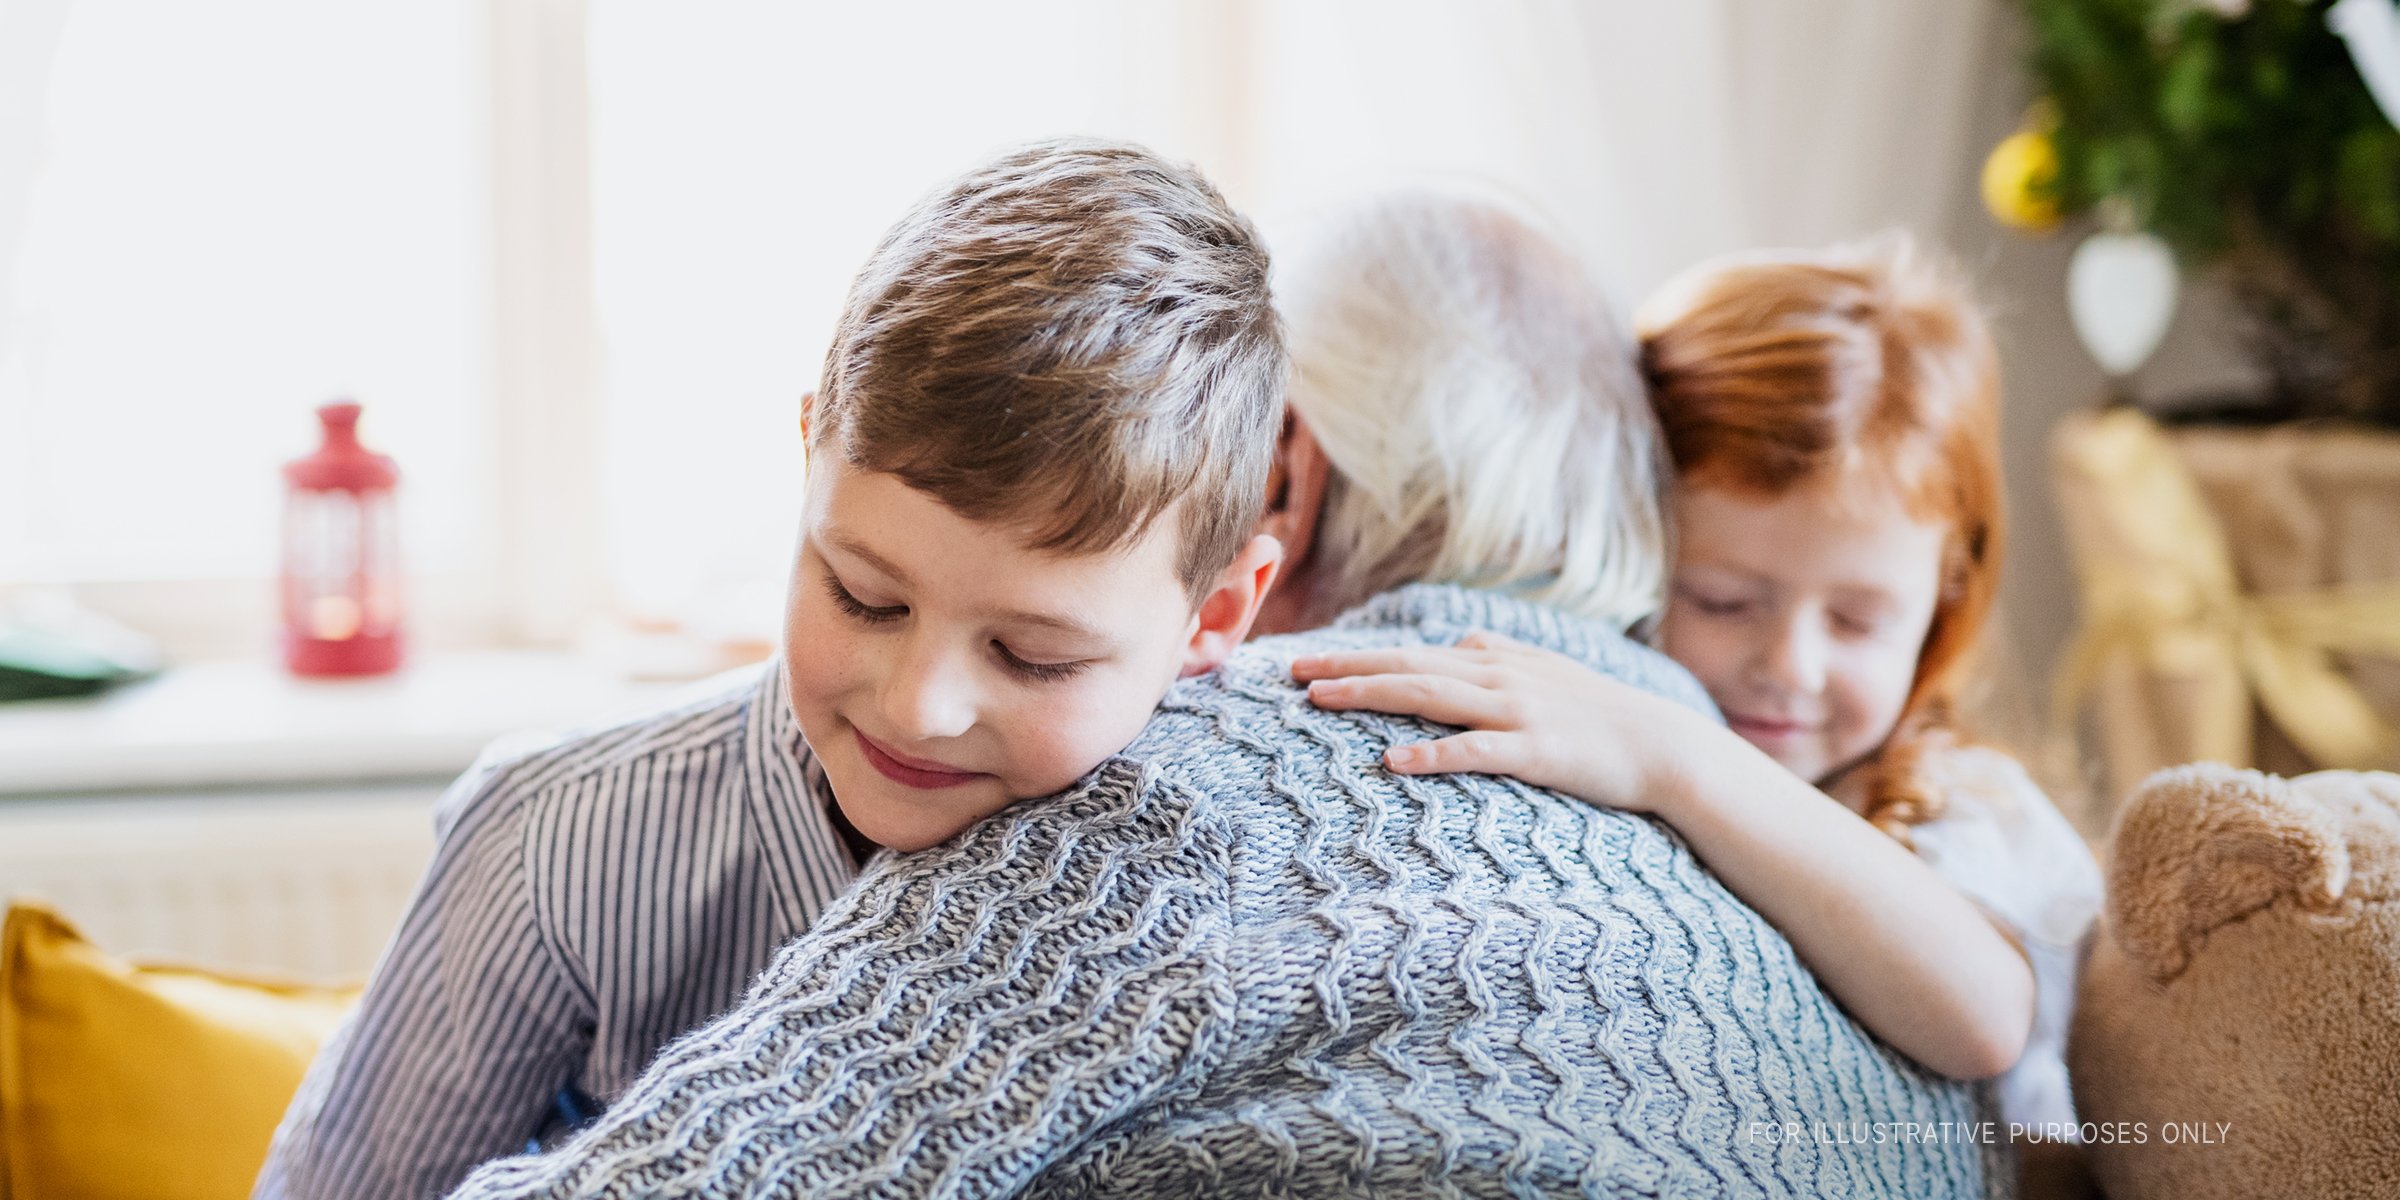 Children hugging an old man | Source: Shutterstock